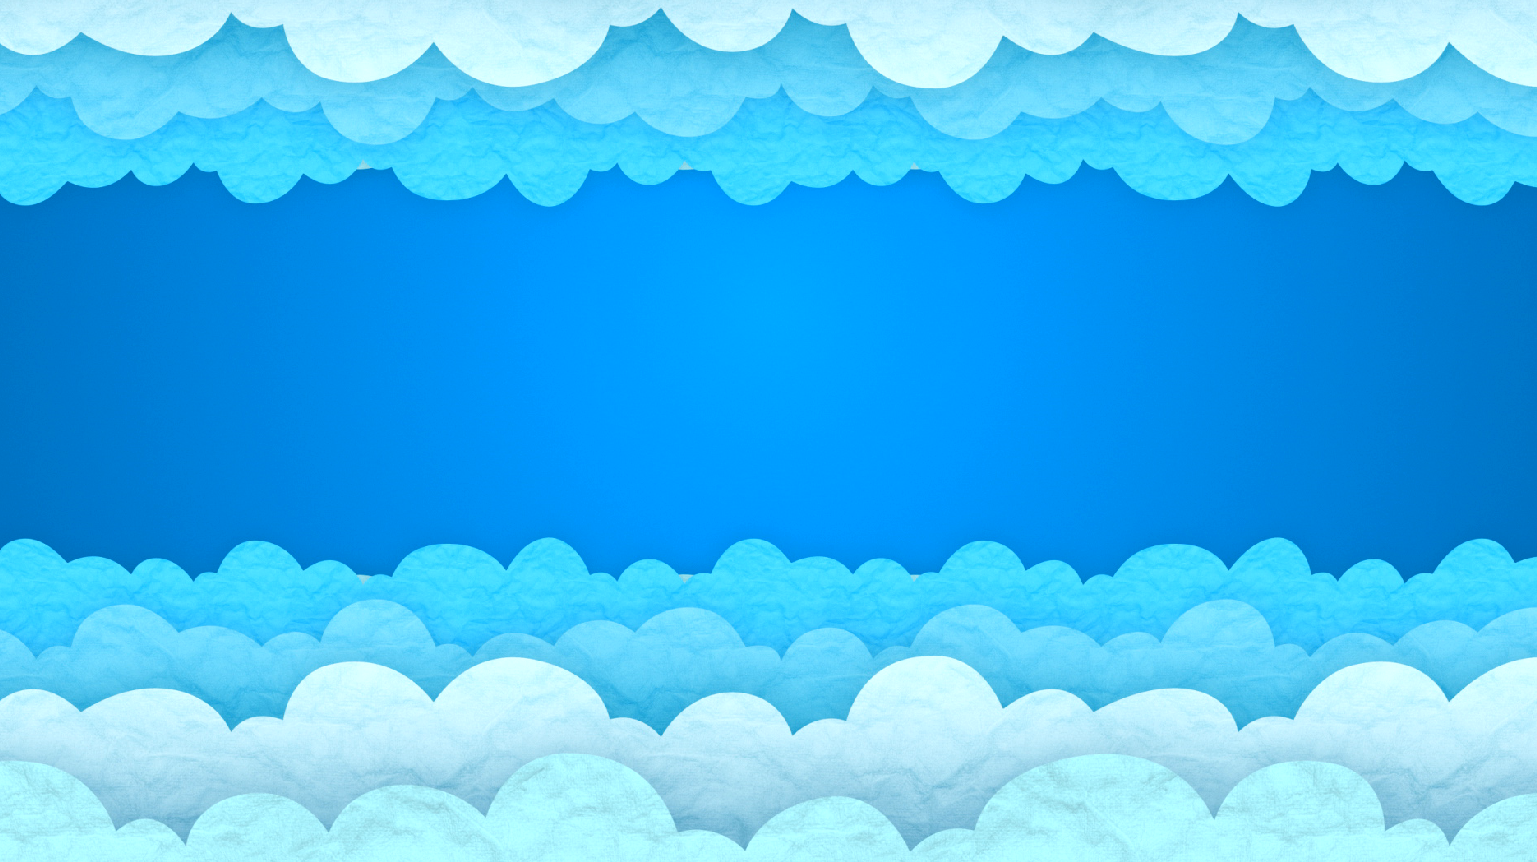 的蓝色背景下,视频上下修饰的层层白云在画面中交错飘动,画面很清新